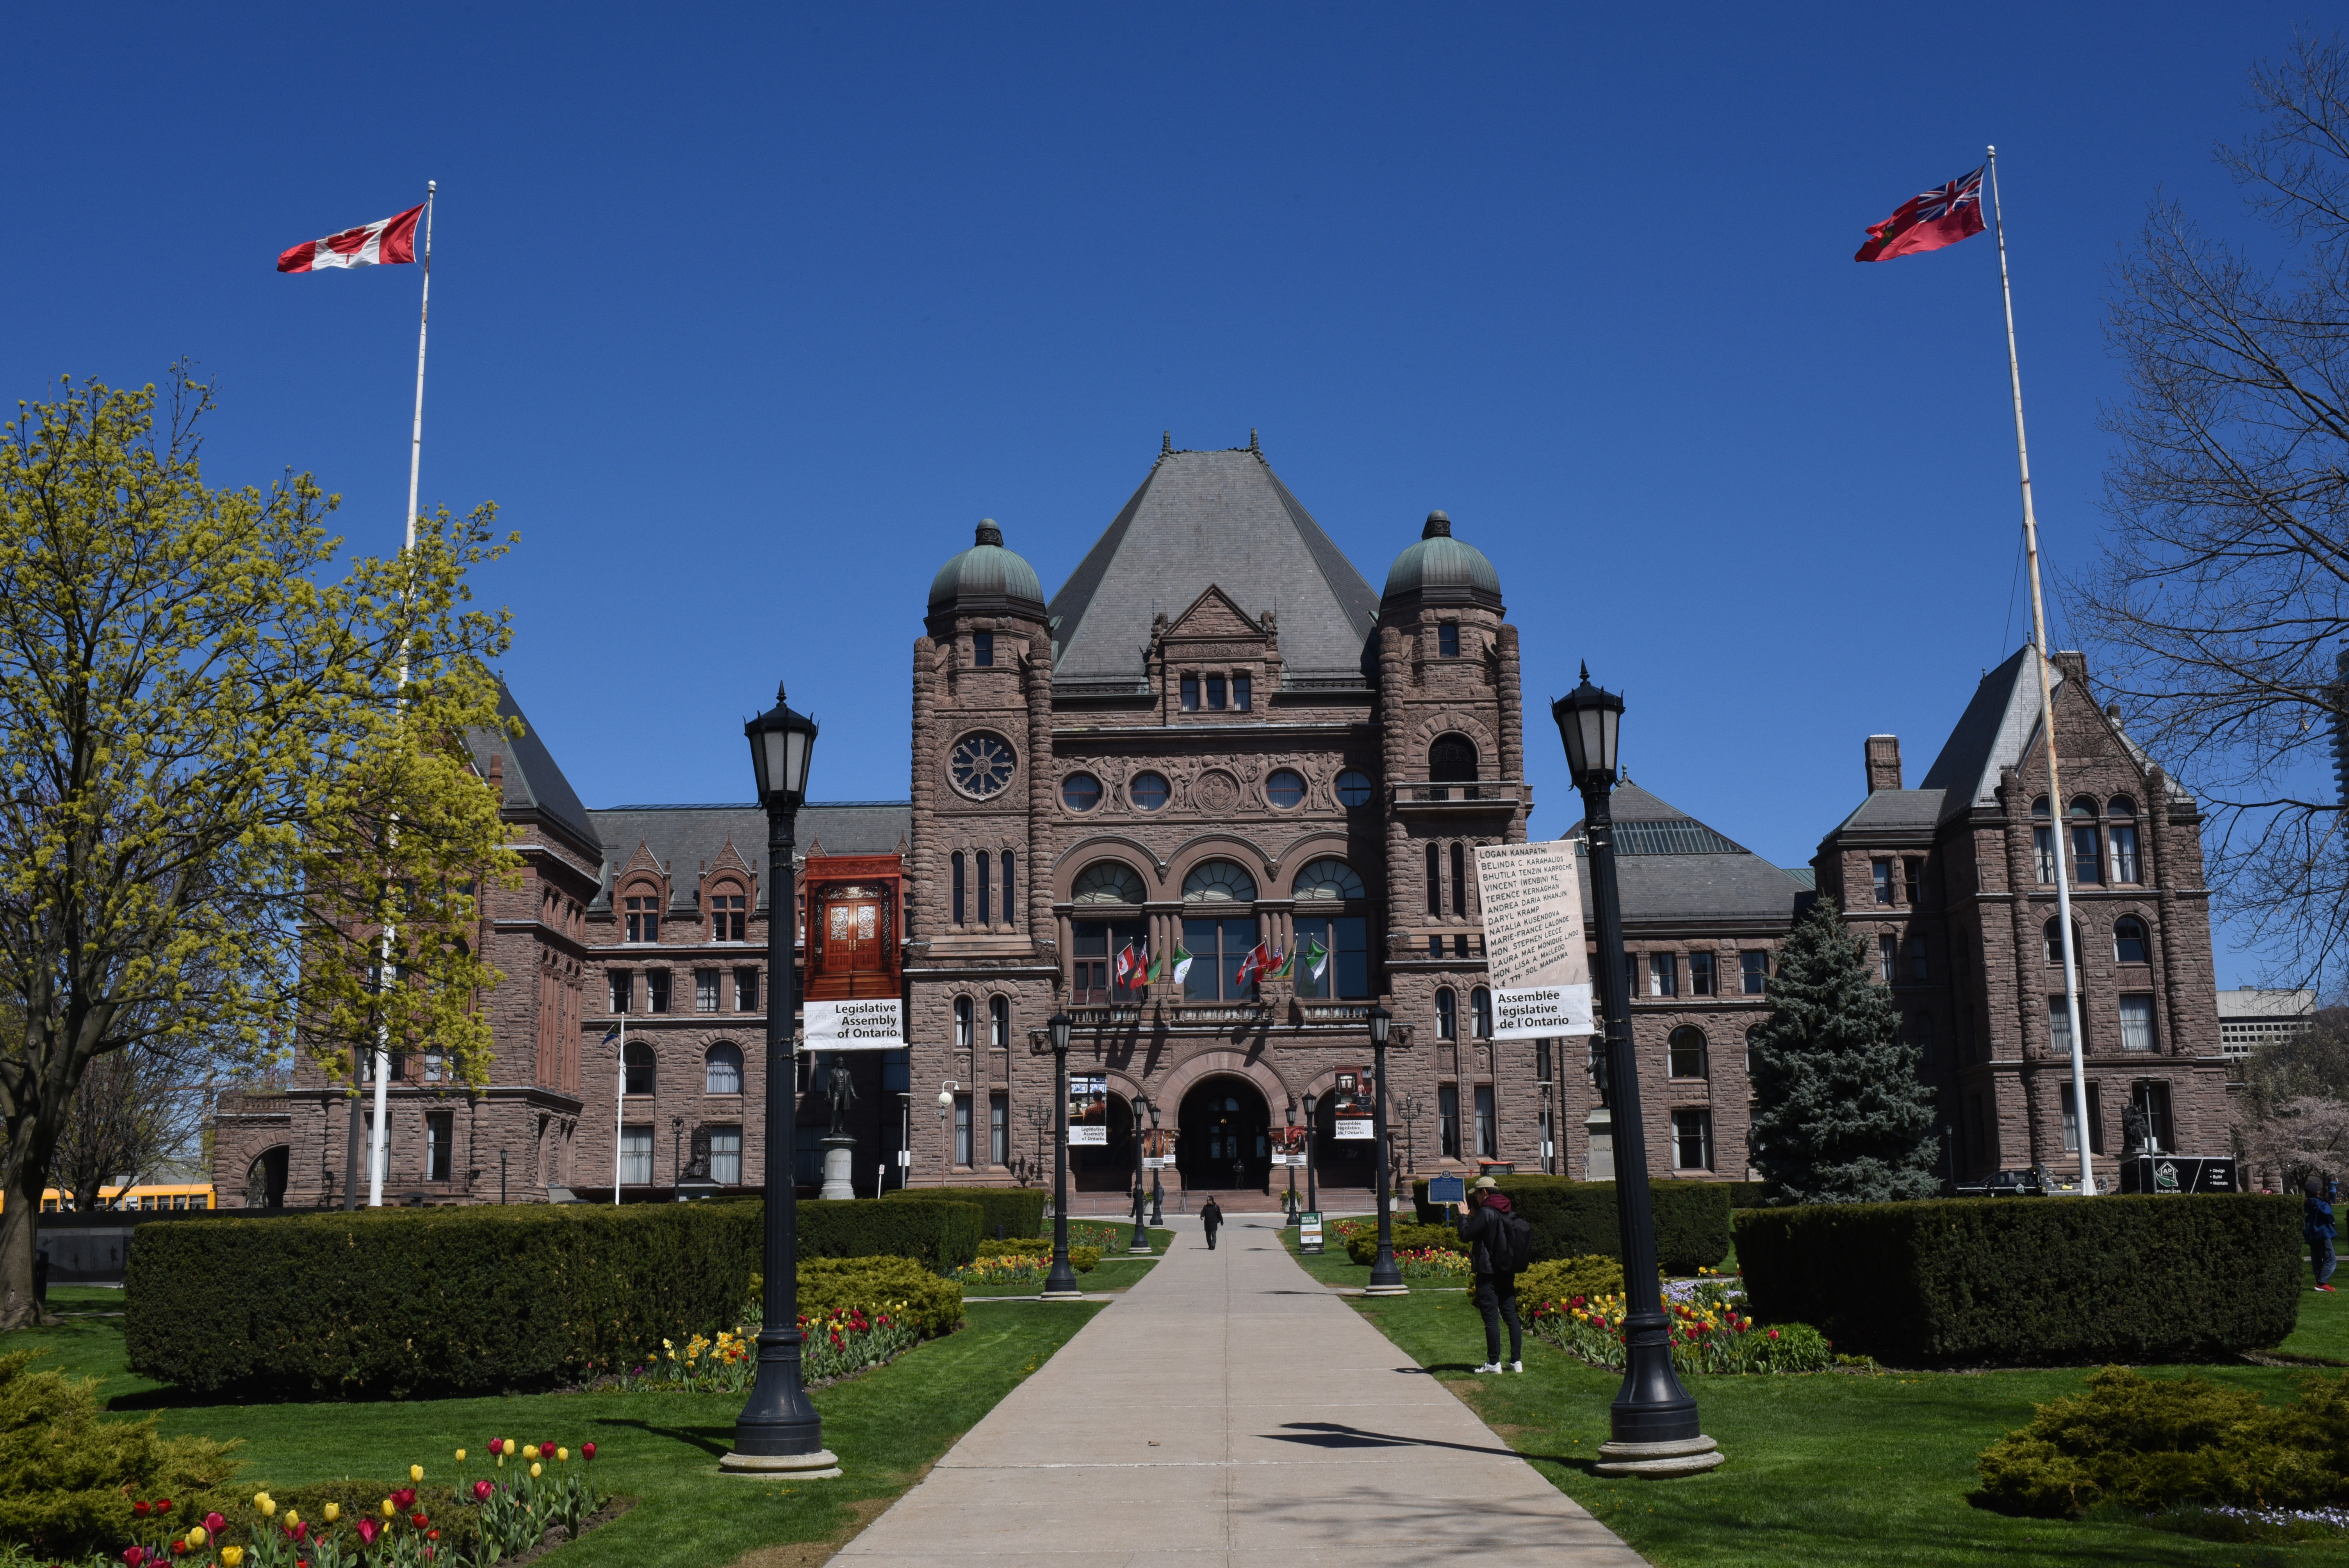 Ontario legislature rises early for extended summer break